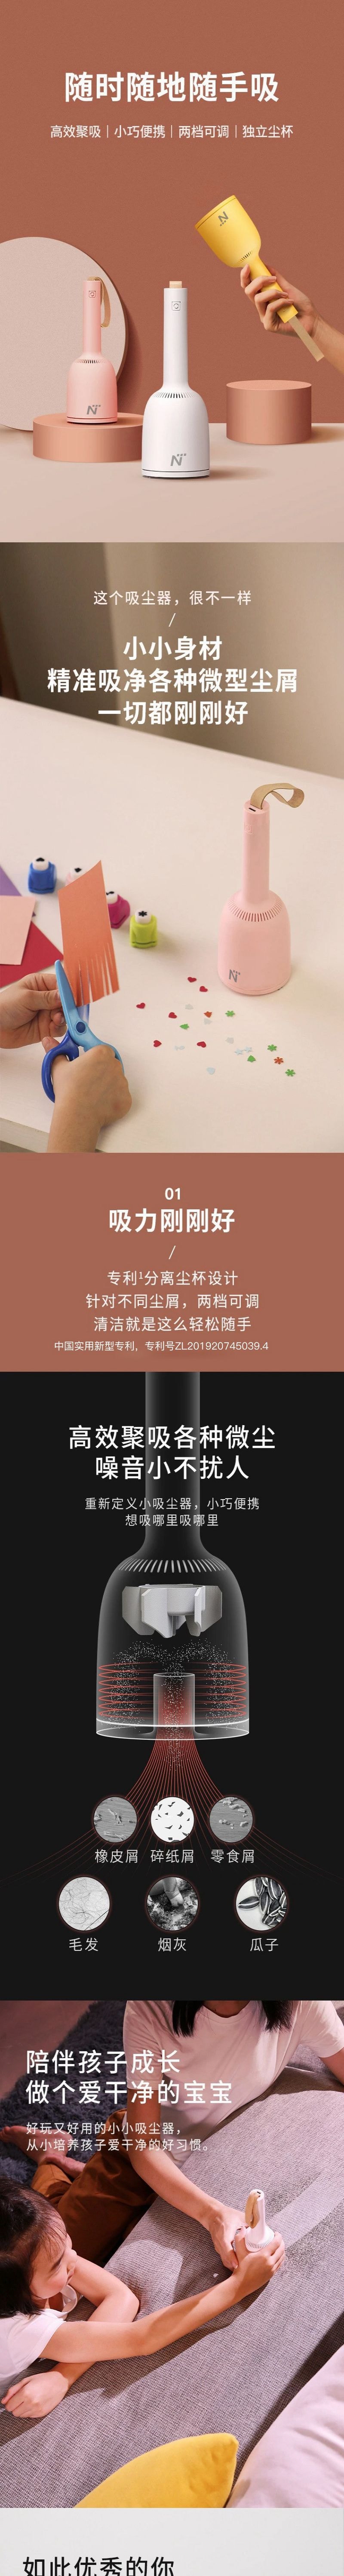 【香港DHL 5-7日达】网易智造 mini桌面吸尘器 告别桌面沙发尘屑毛发 公主粉